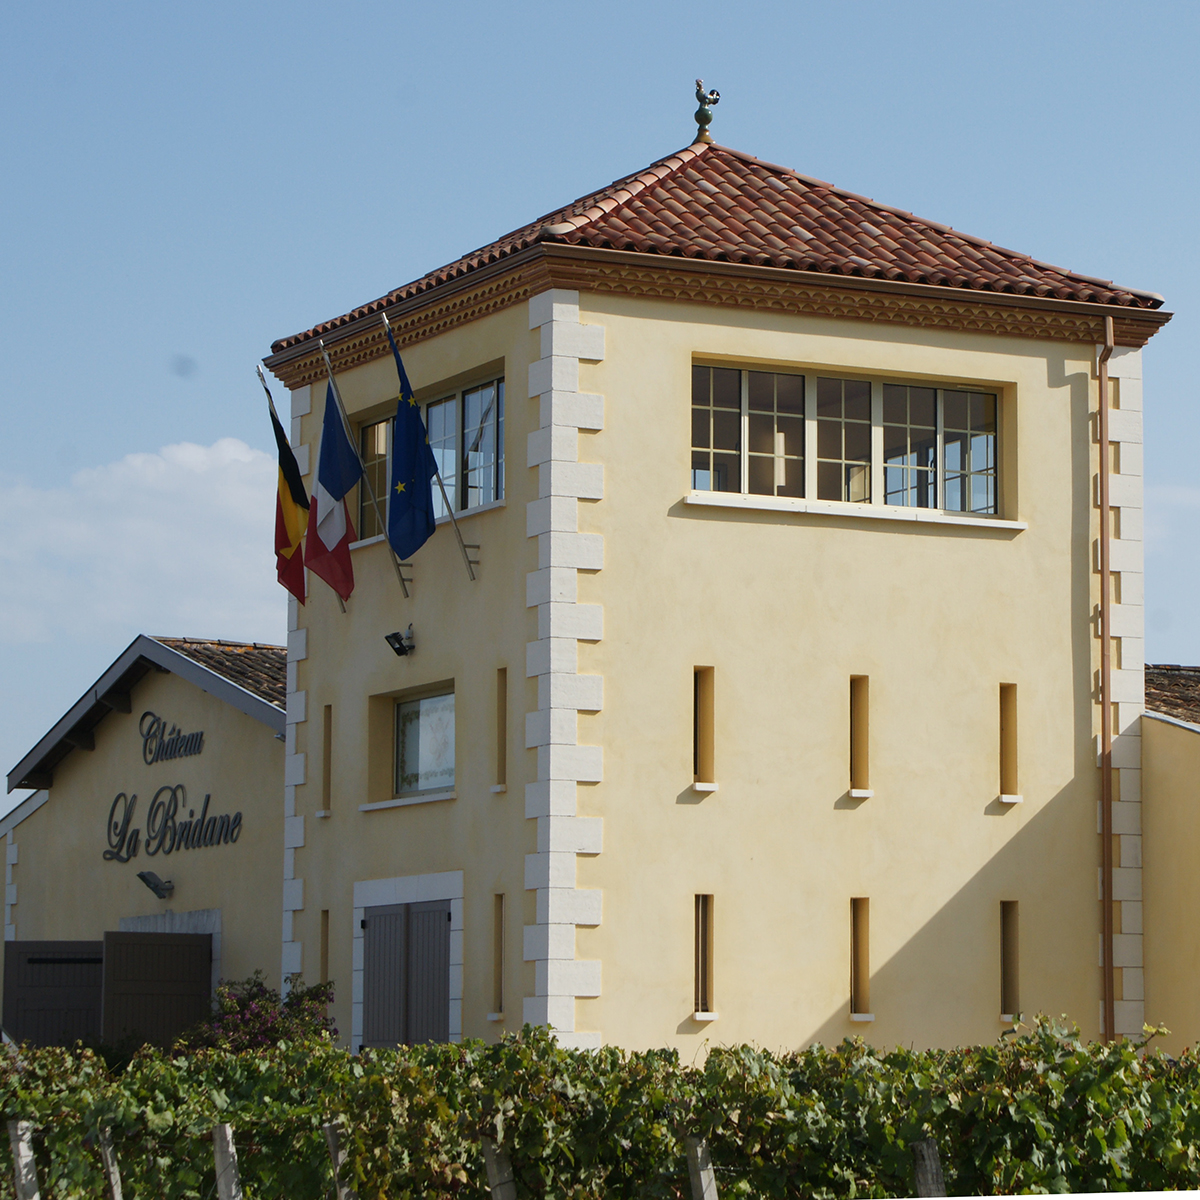 2014 Chateau la Bridane